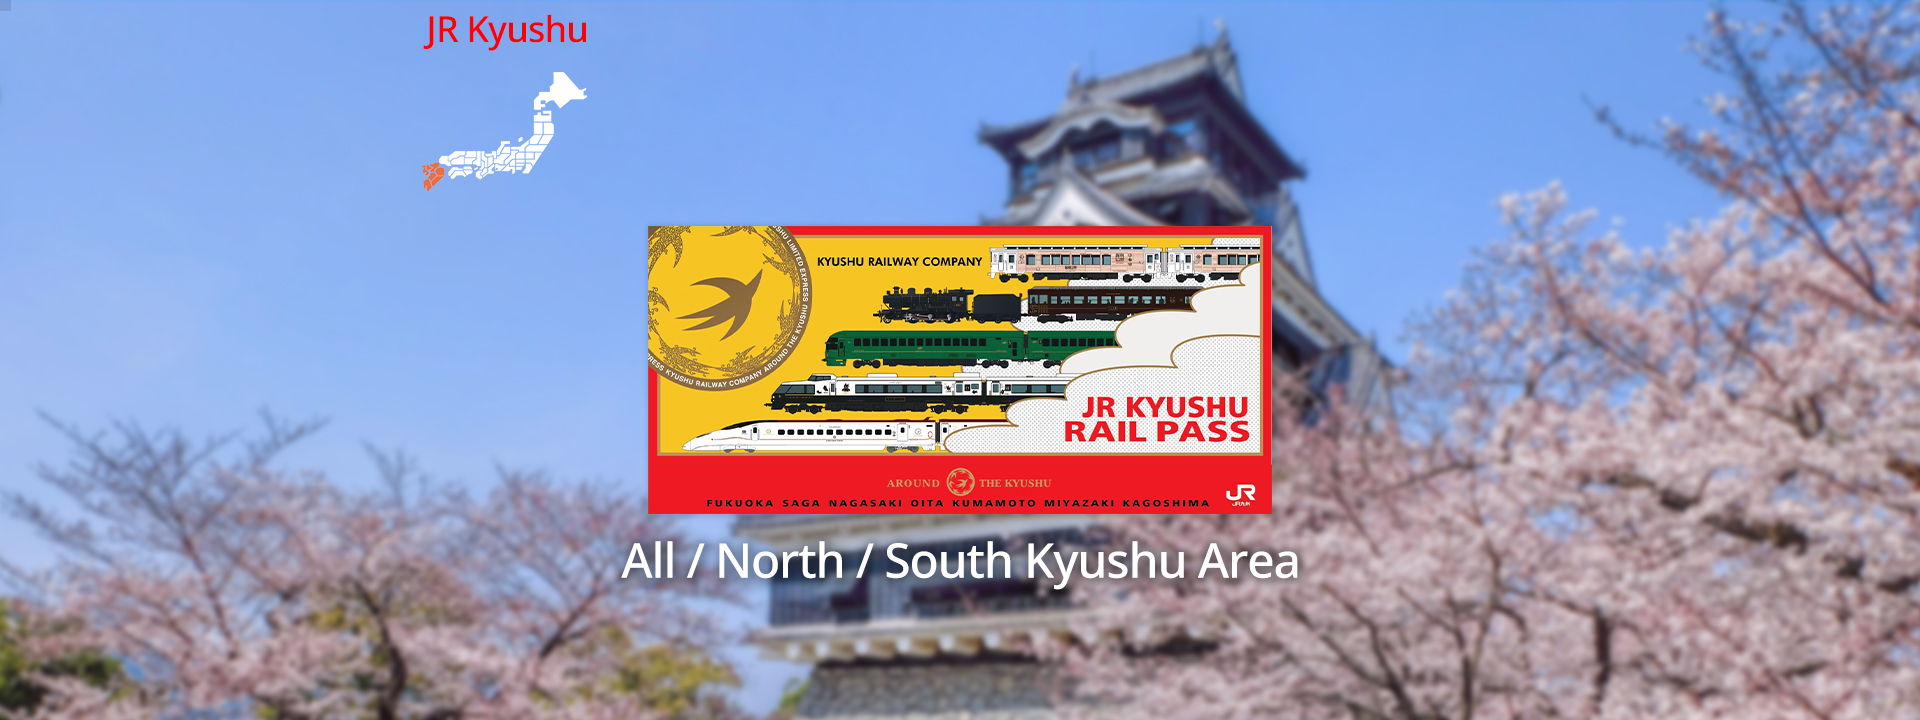 JR Pass 全九州 & 南九州 & 北九州鐵路周遊券